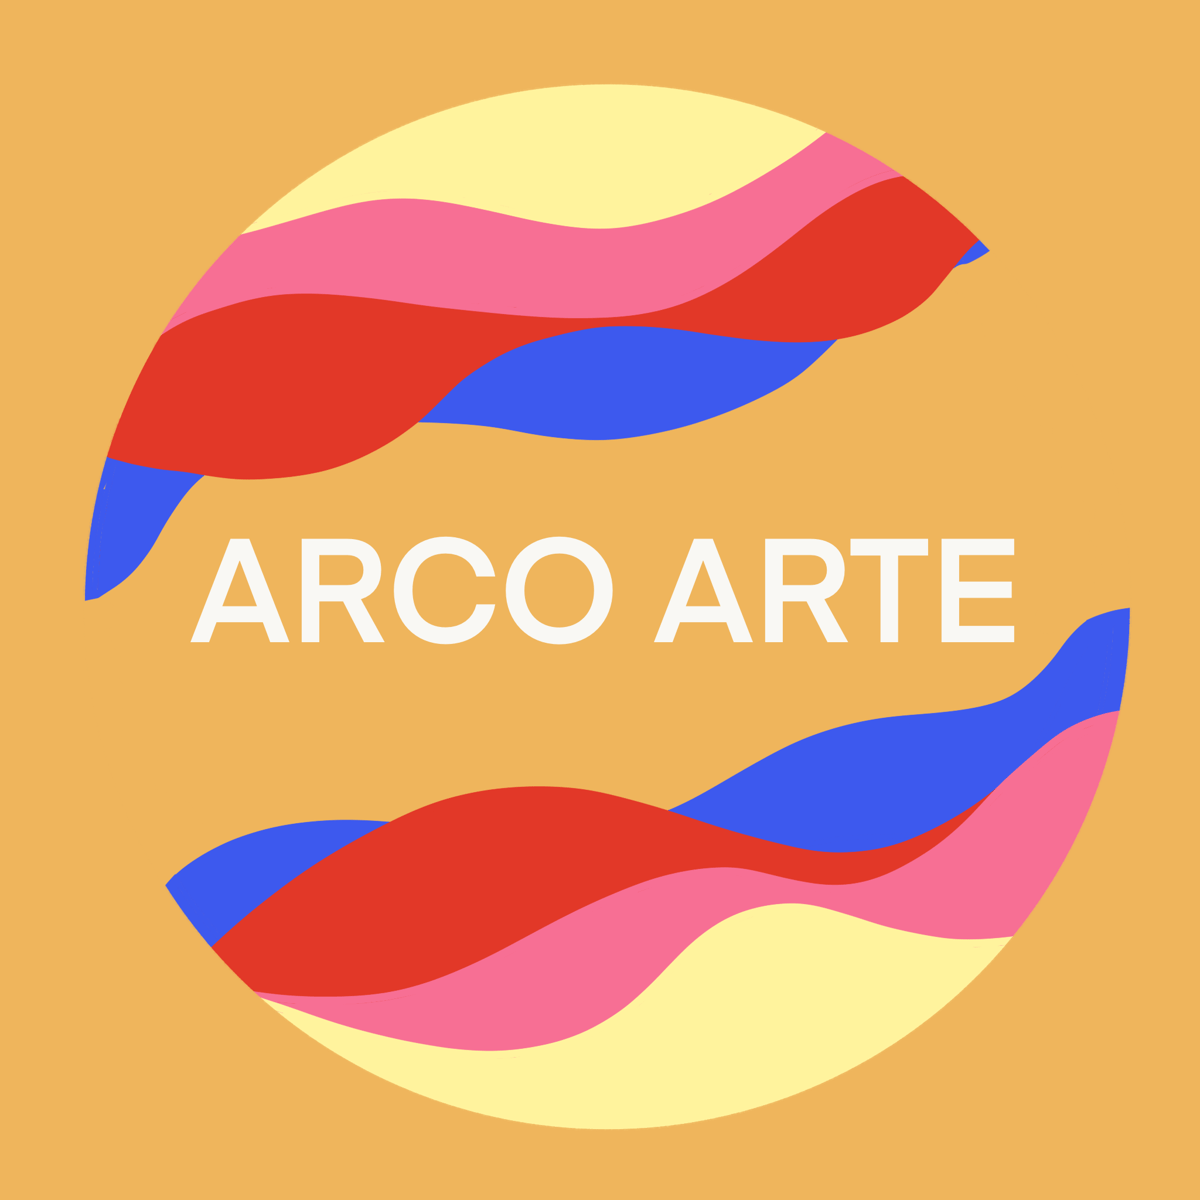 Arco Arte